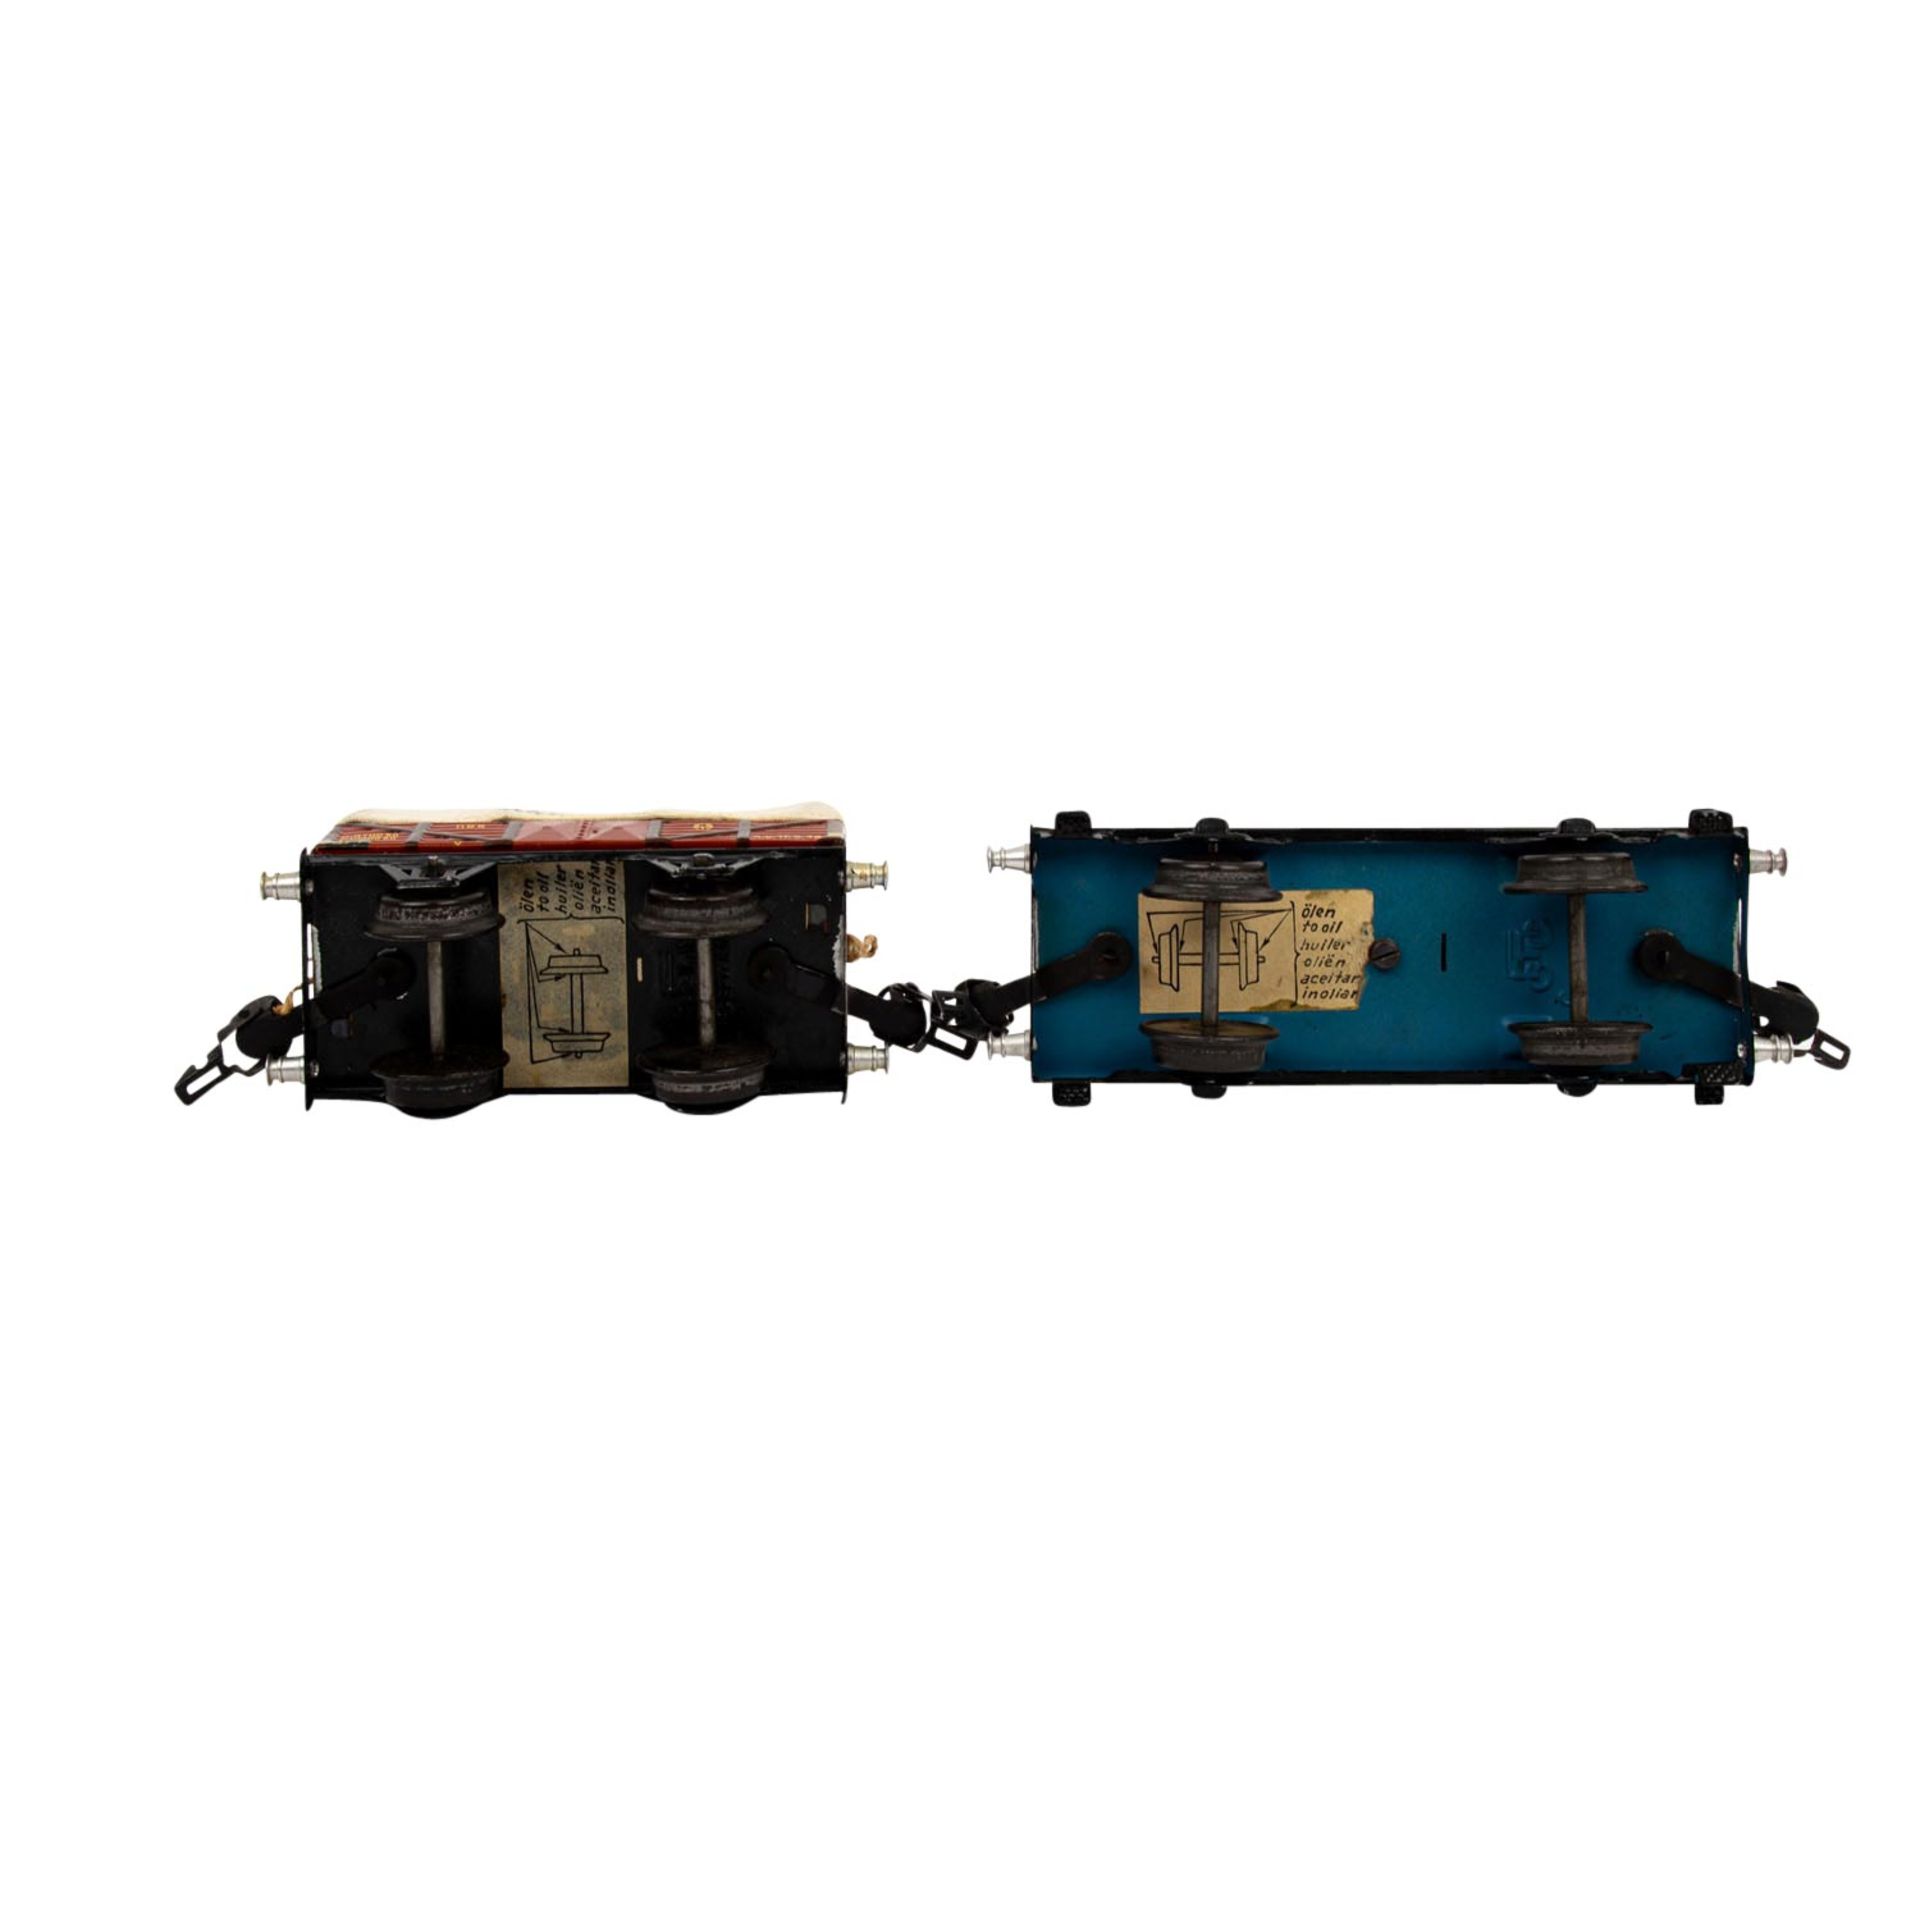 MÄRKLIN zwei Güterwagen, Spur 0, 1930er Jahre, bestehend aus Plattformwagen blau/sch - Bild 6 aus 7